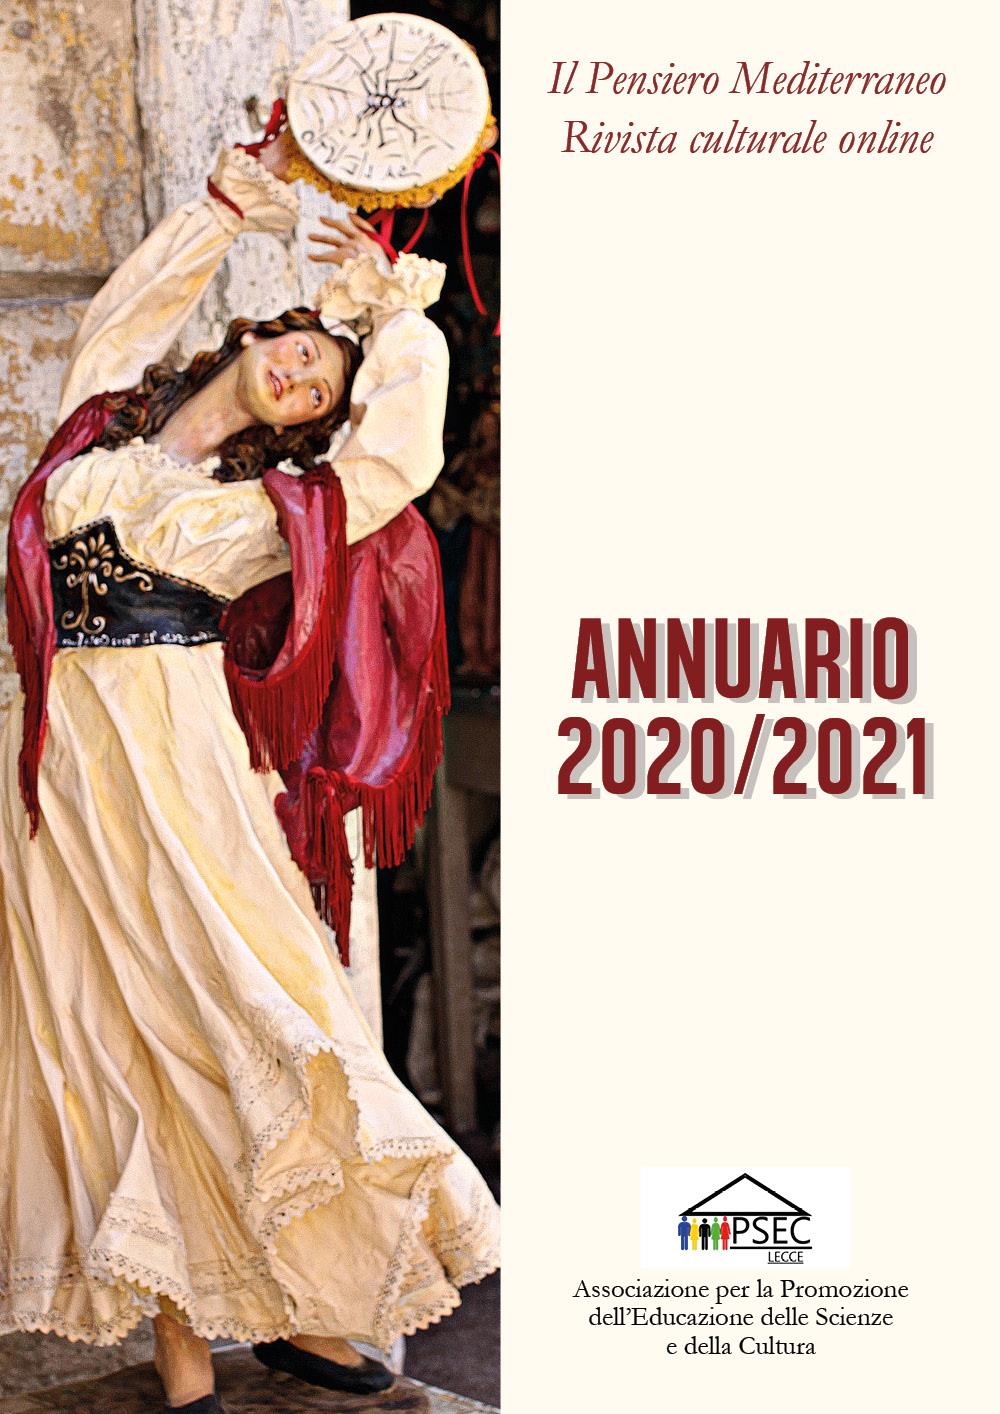 ANNUARIO 2020 - 2021 Il Pensiero Mediterraneo - Rivista culturale online